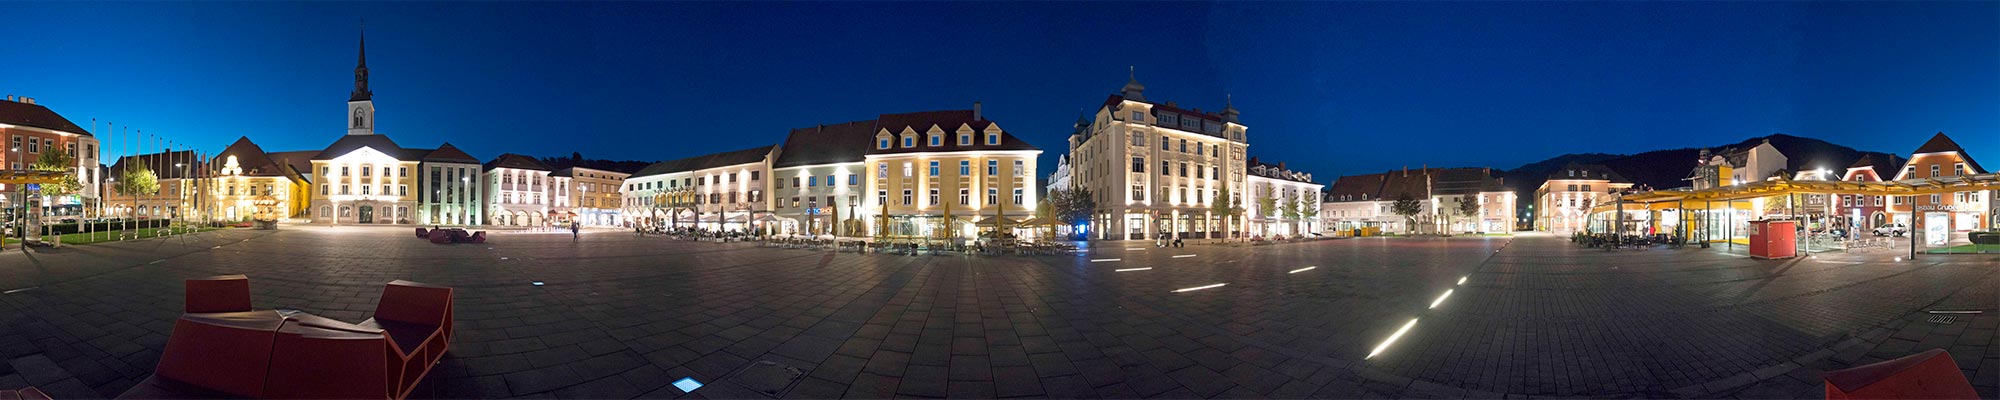 Bruck bei Nacht - Panoramabild vom Hauptplatz mit Rathaus und den Bürgerhäusern